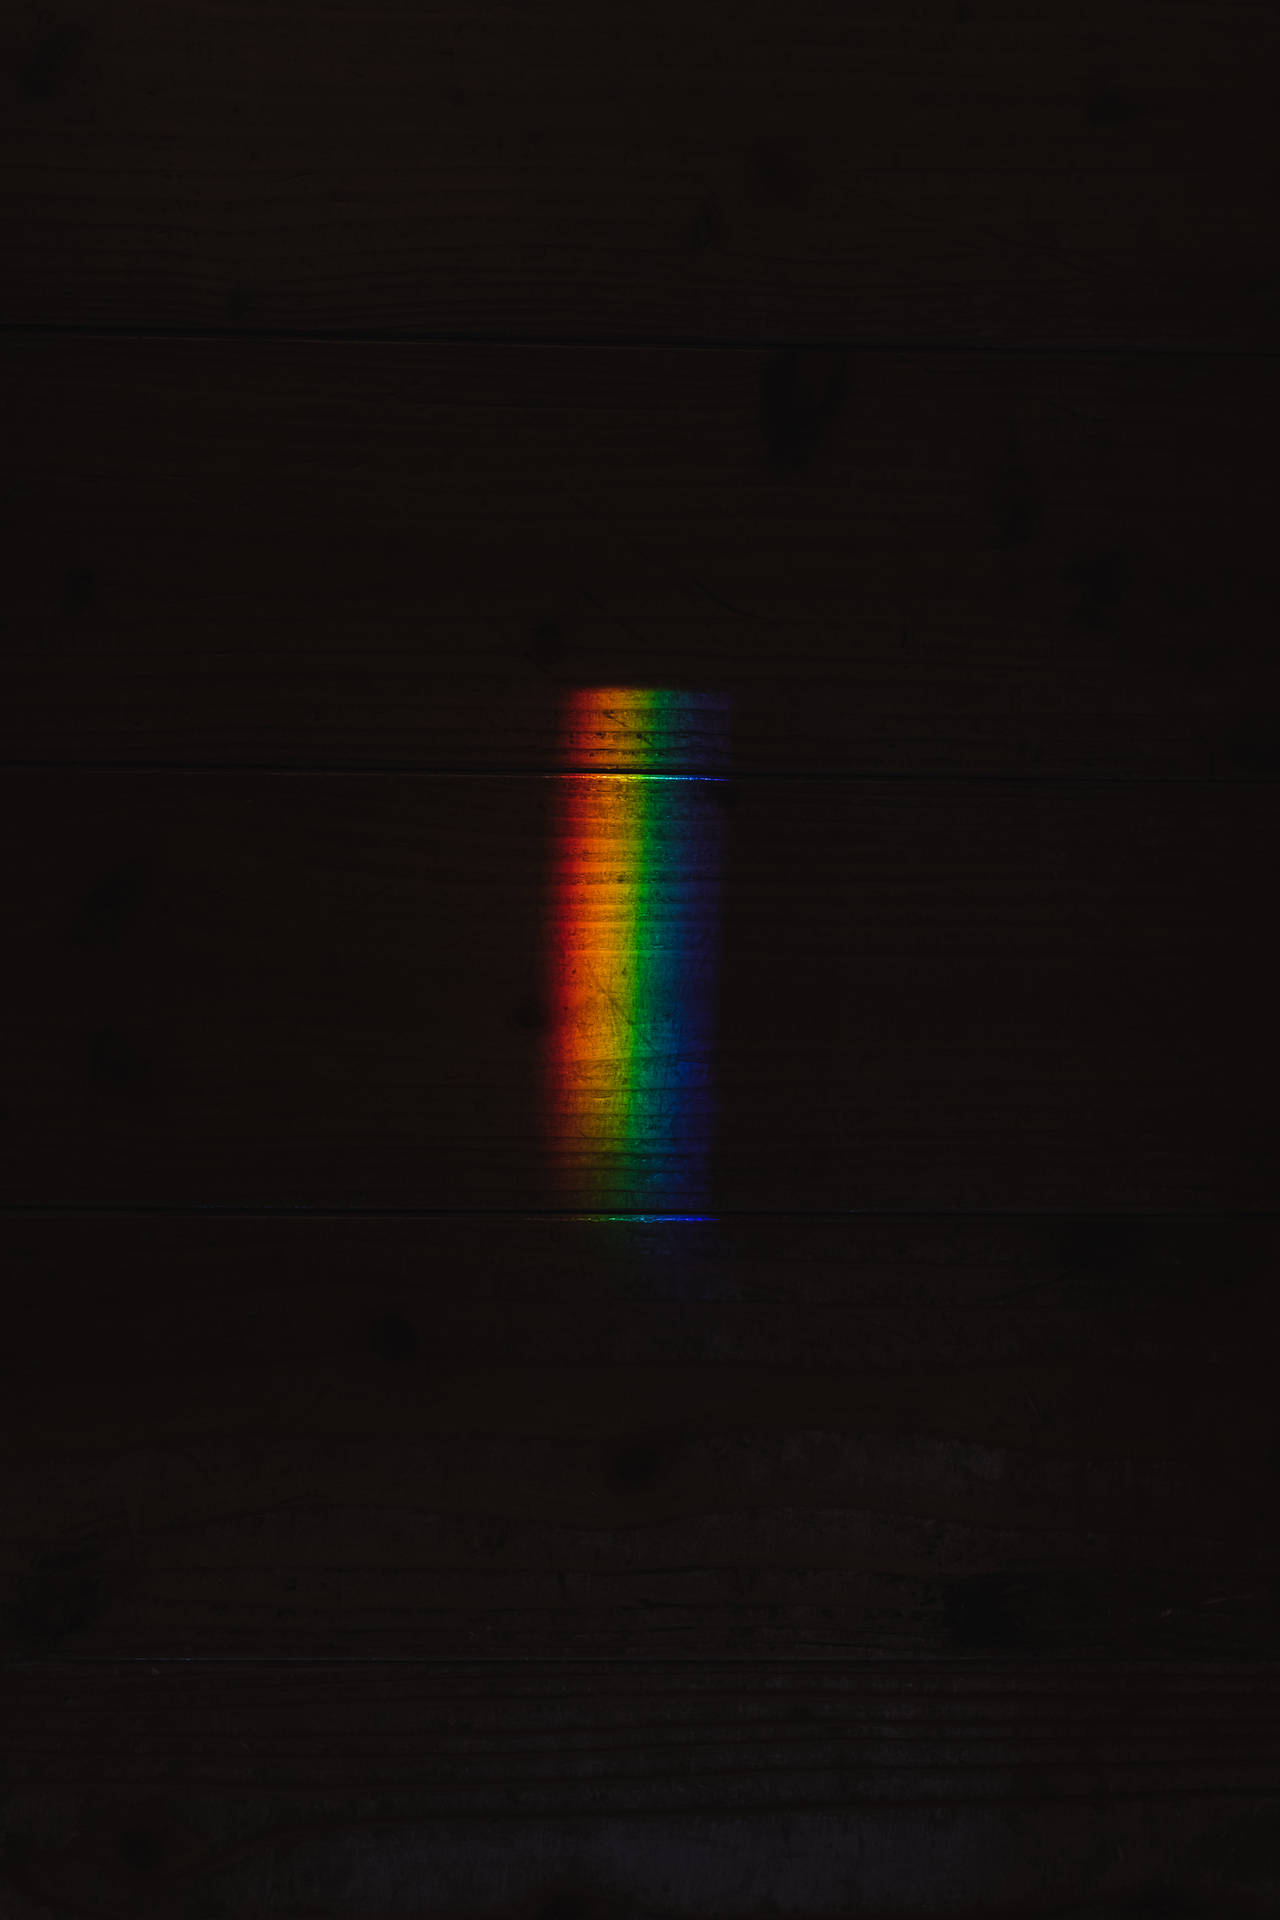 Rainbow Prism In Dark Background